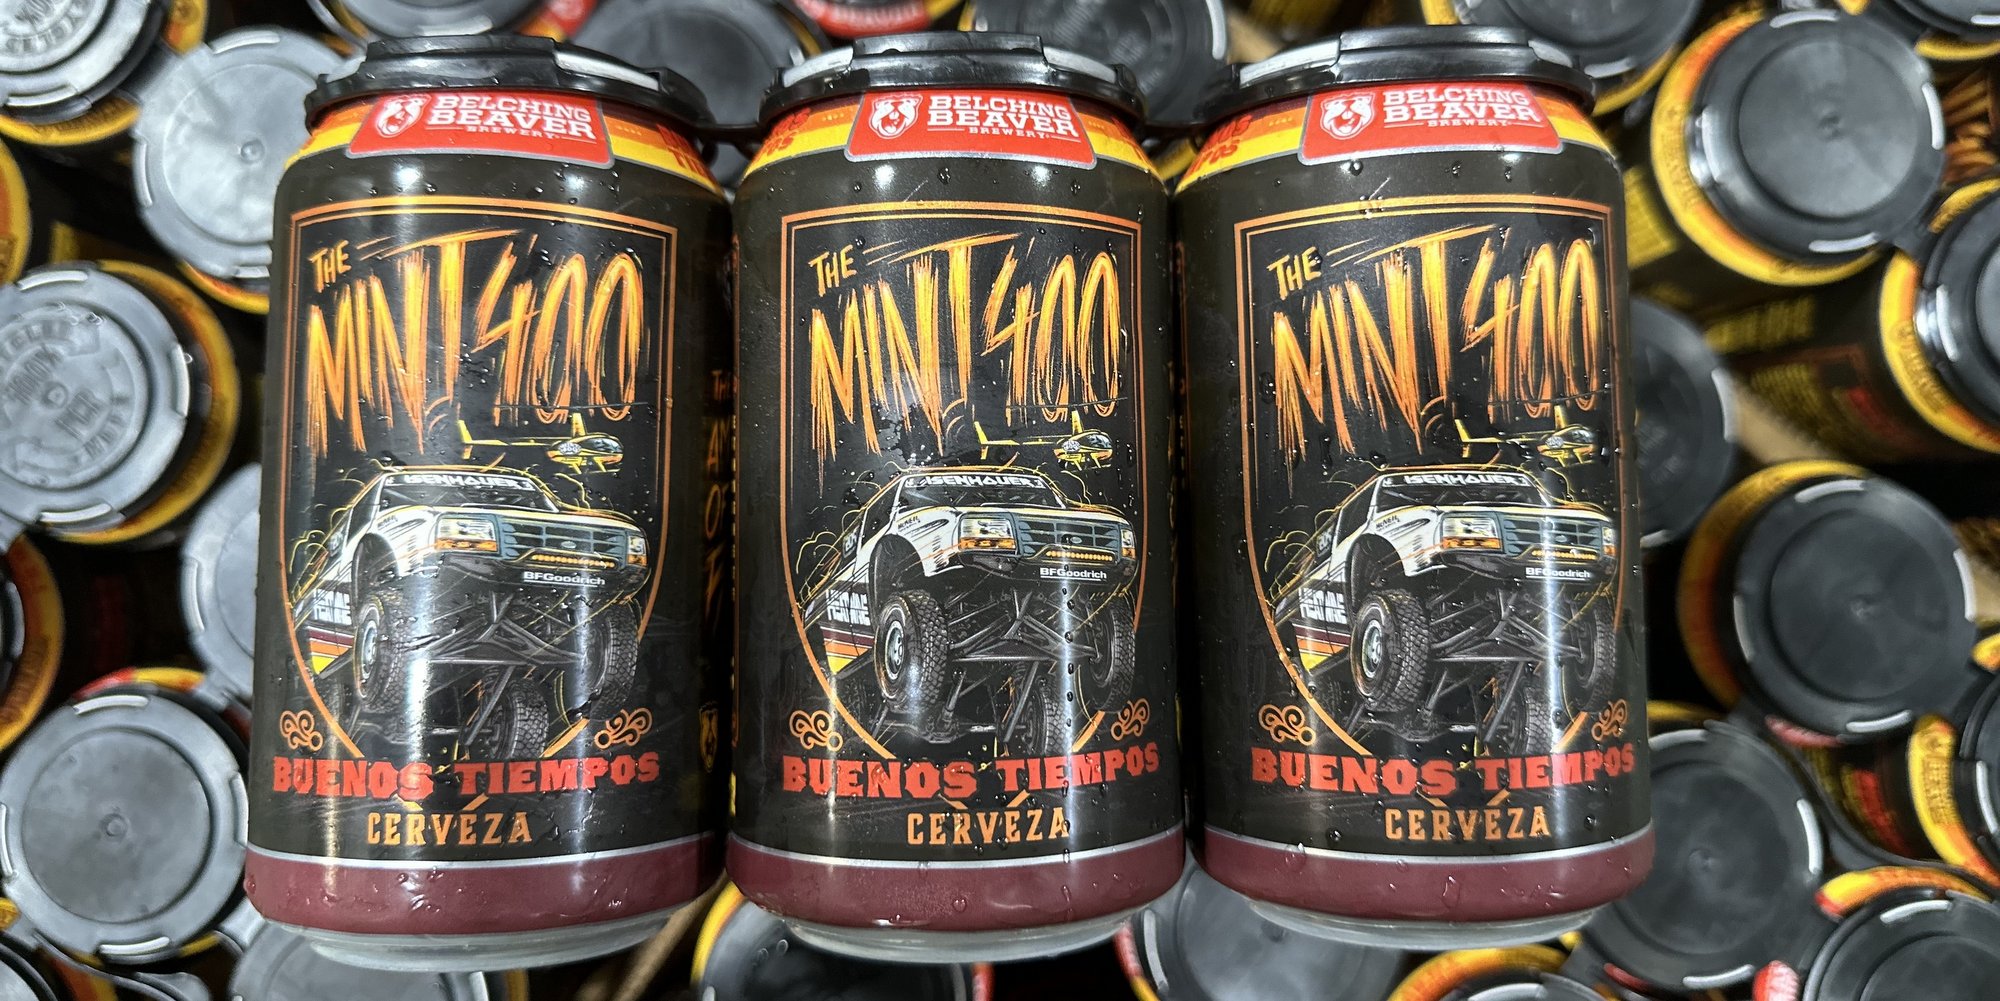 The-Mint-400-Buenos-Tiempos-Cerveza